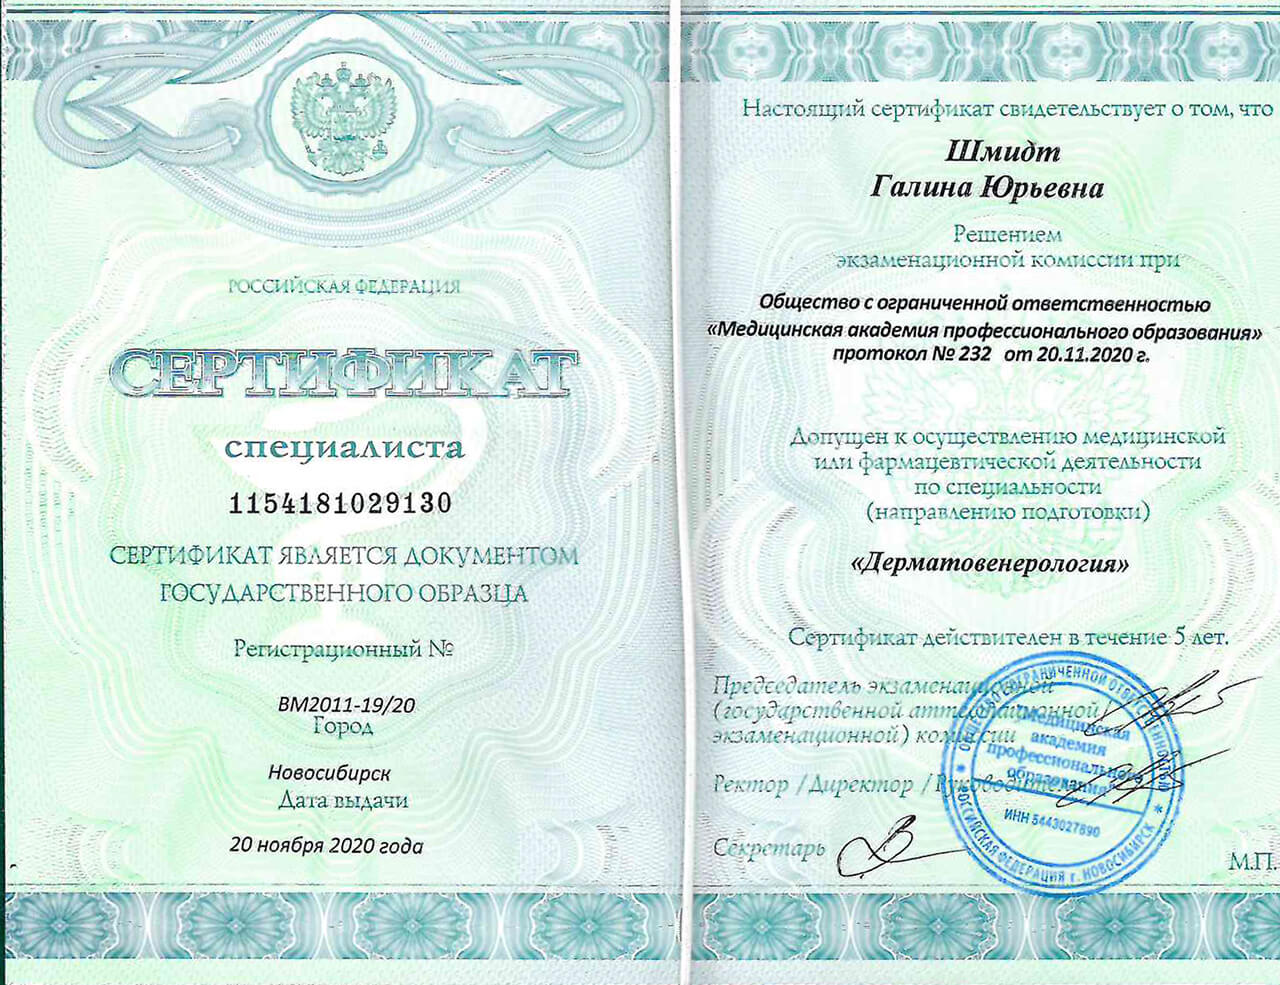 Сертификат специалиста "Дерматовенерология" 2020 г.